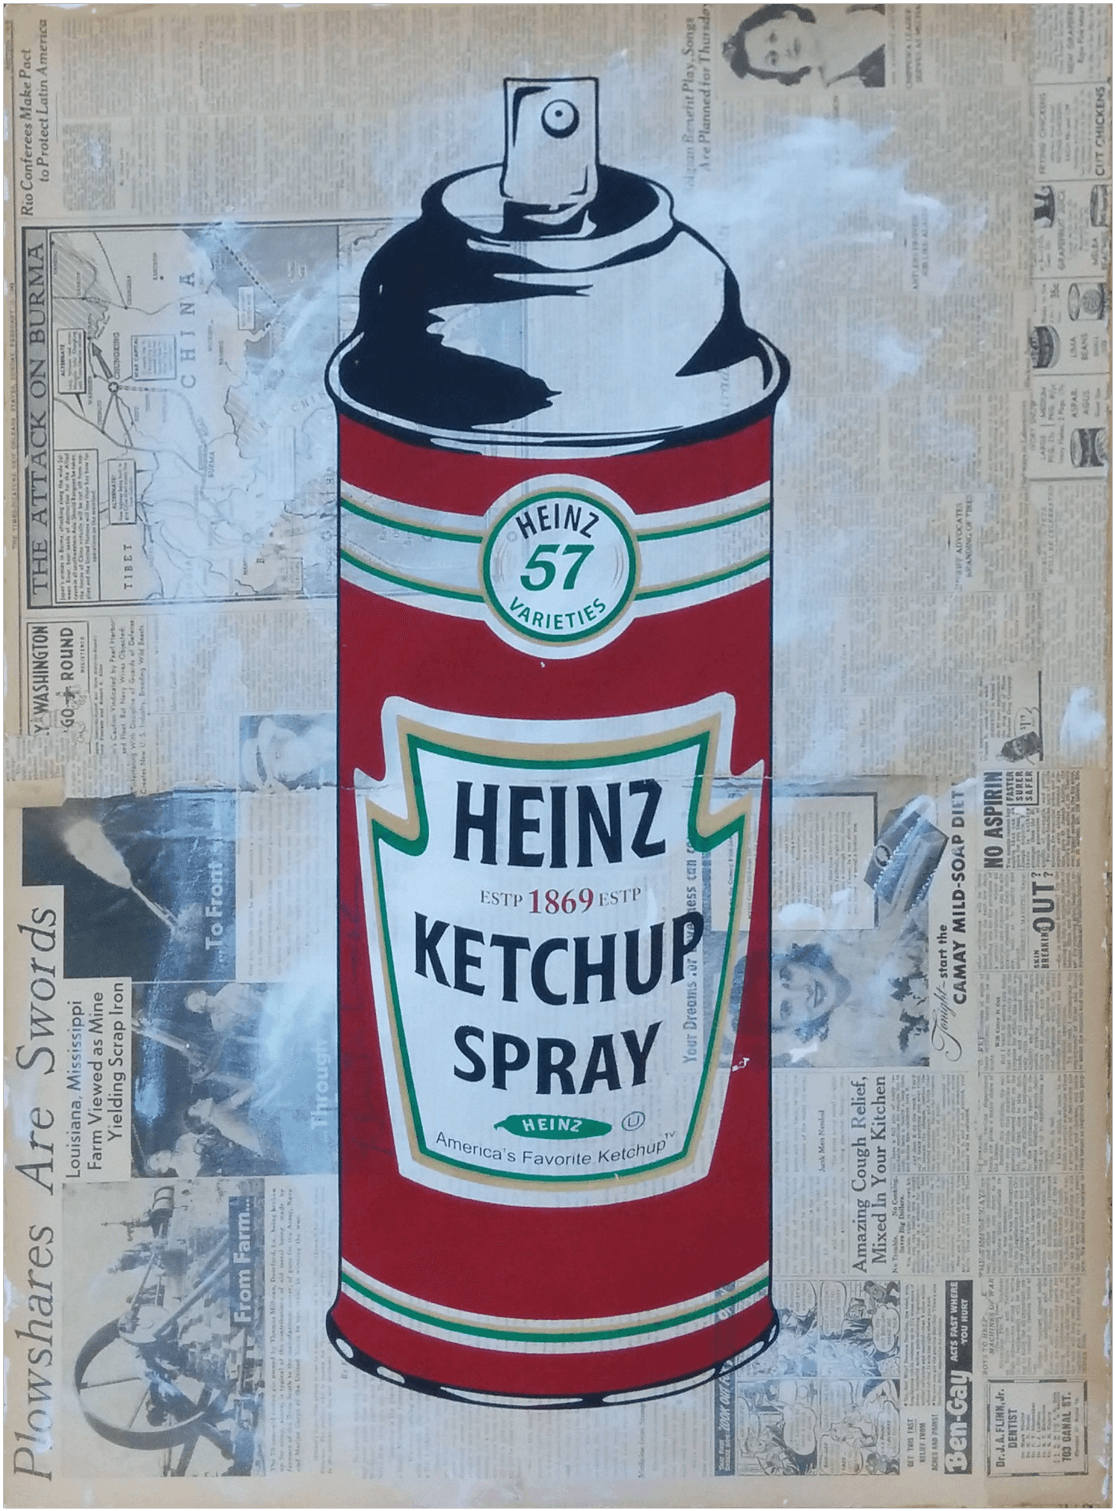 "Heinz Ketchup Spray" - handsignierter Siebdruck von Mr. Brainwash